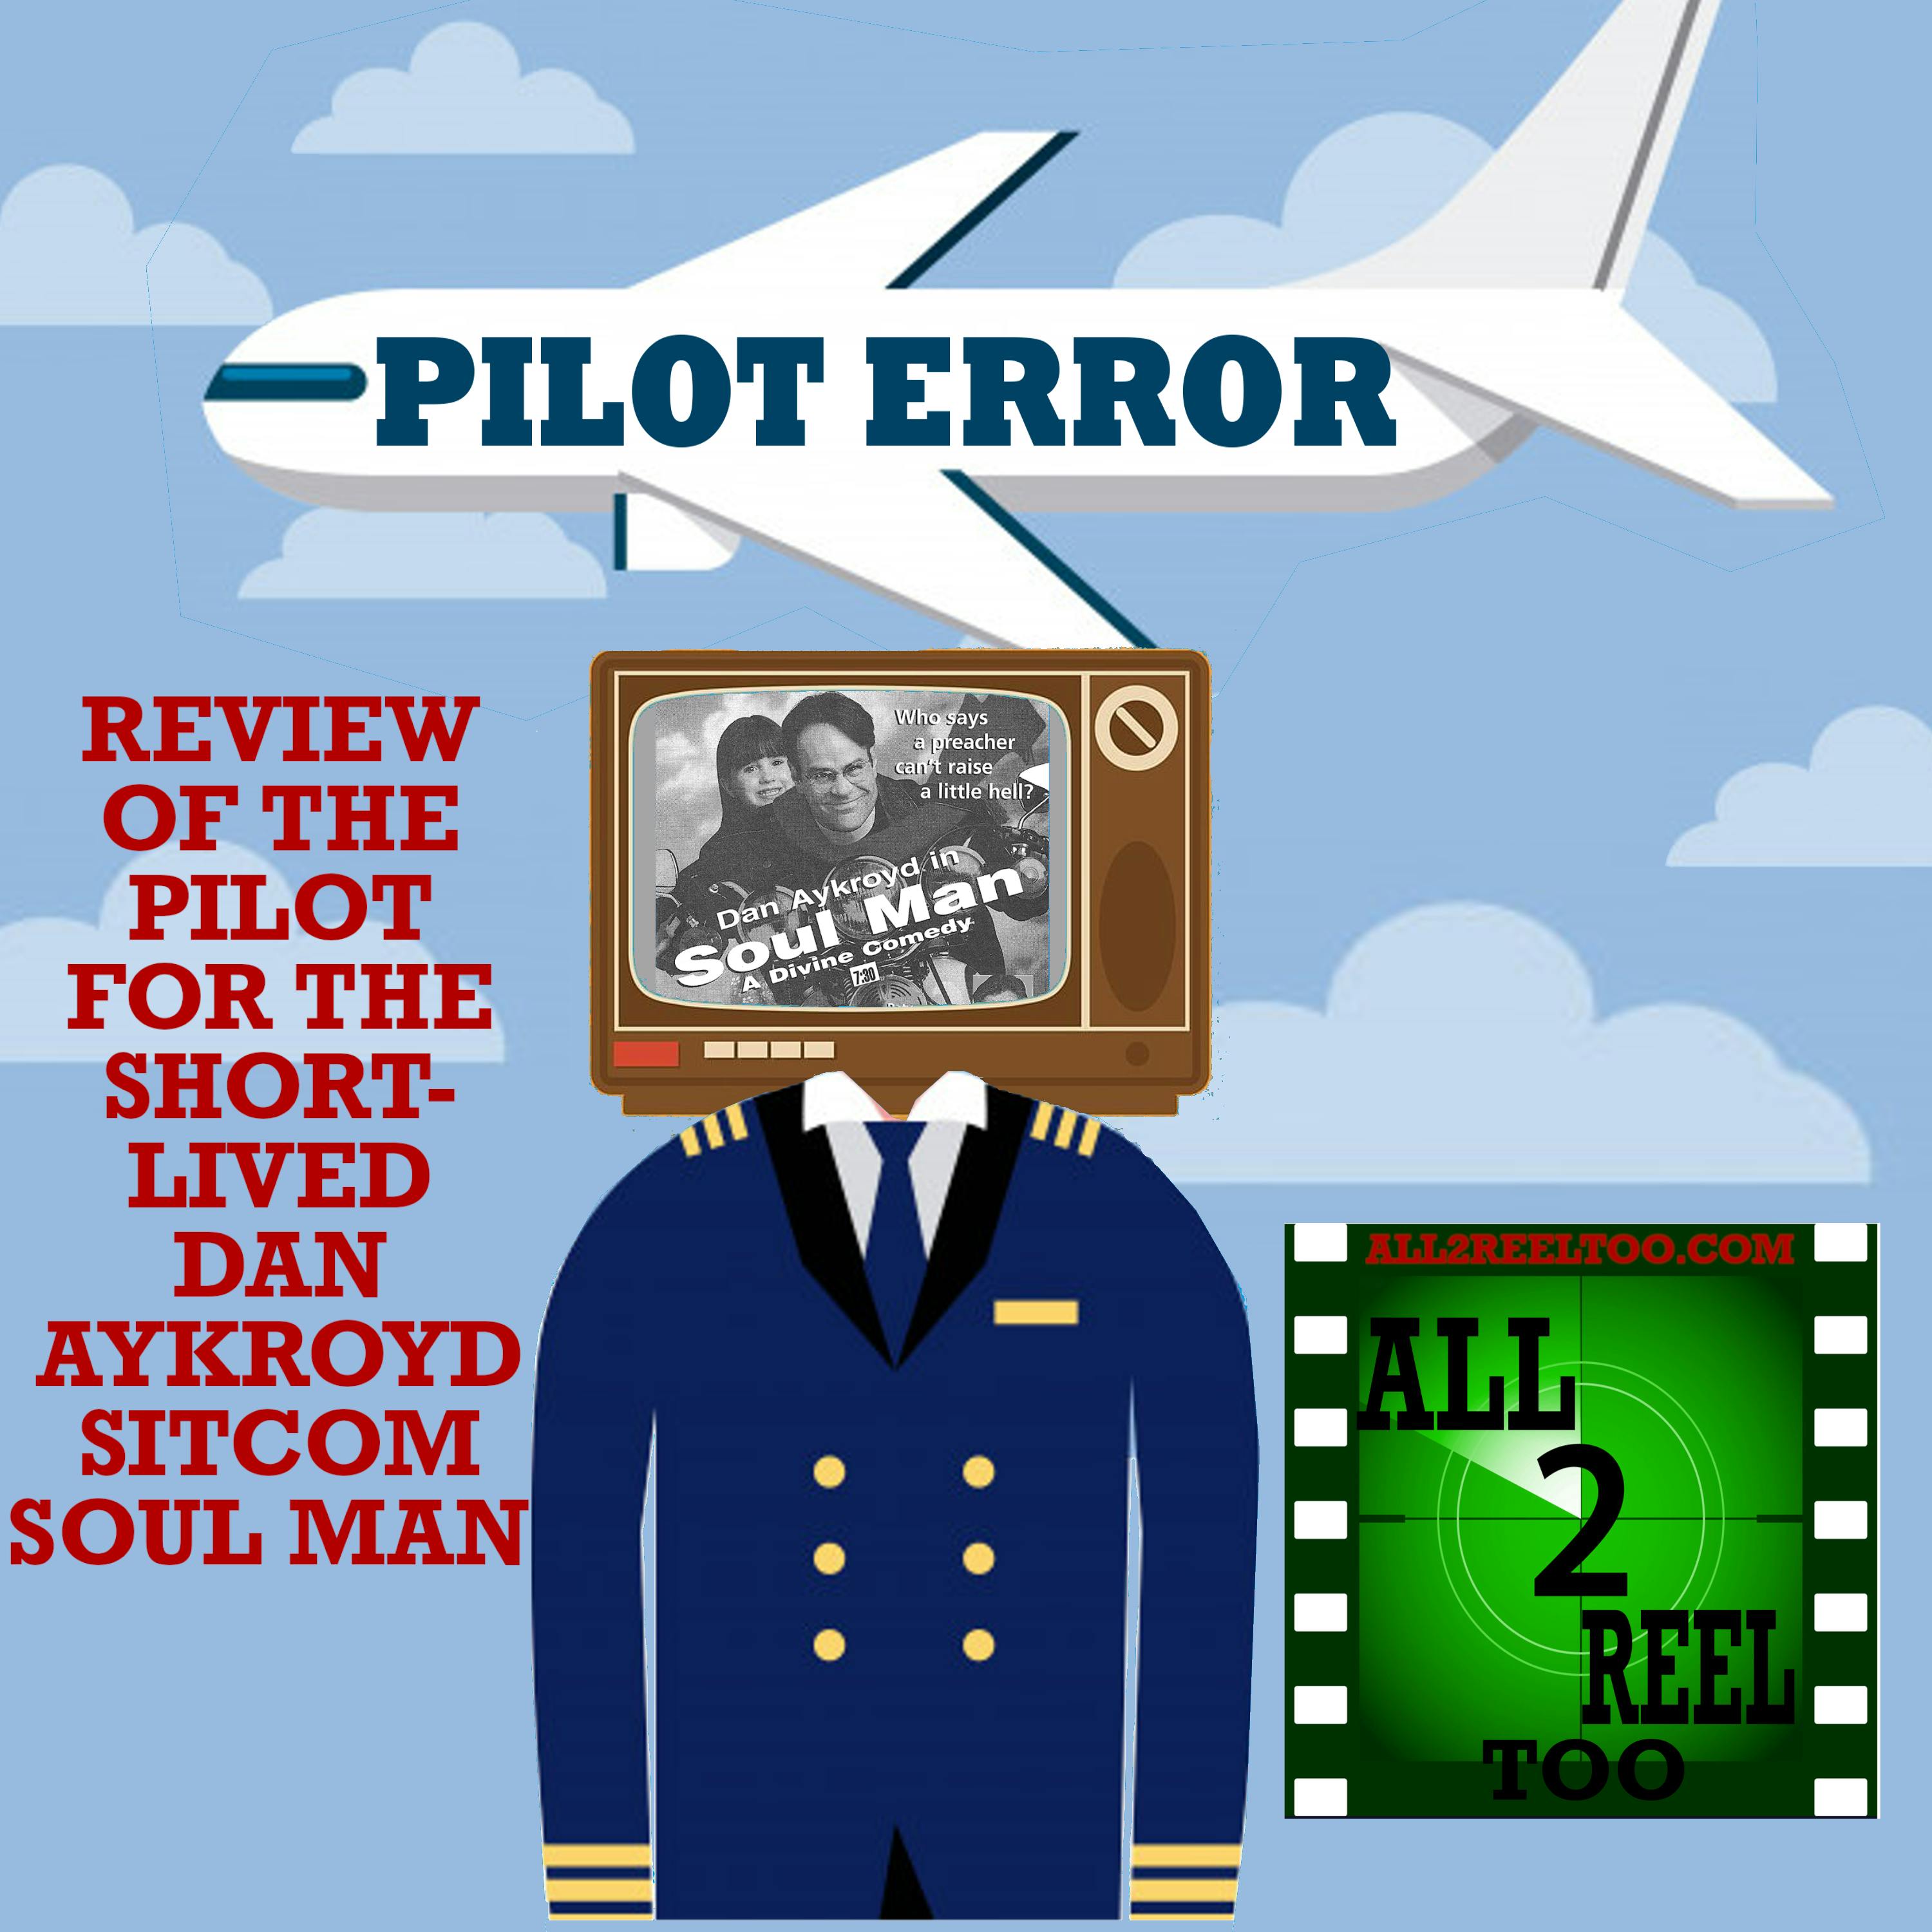 Soul Man (1997) - PILOT ERROR REVIEW